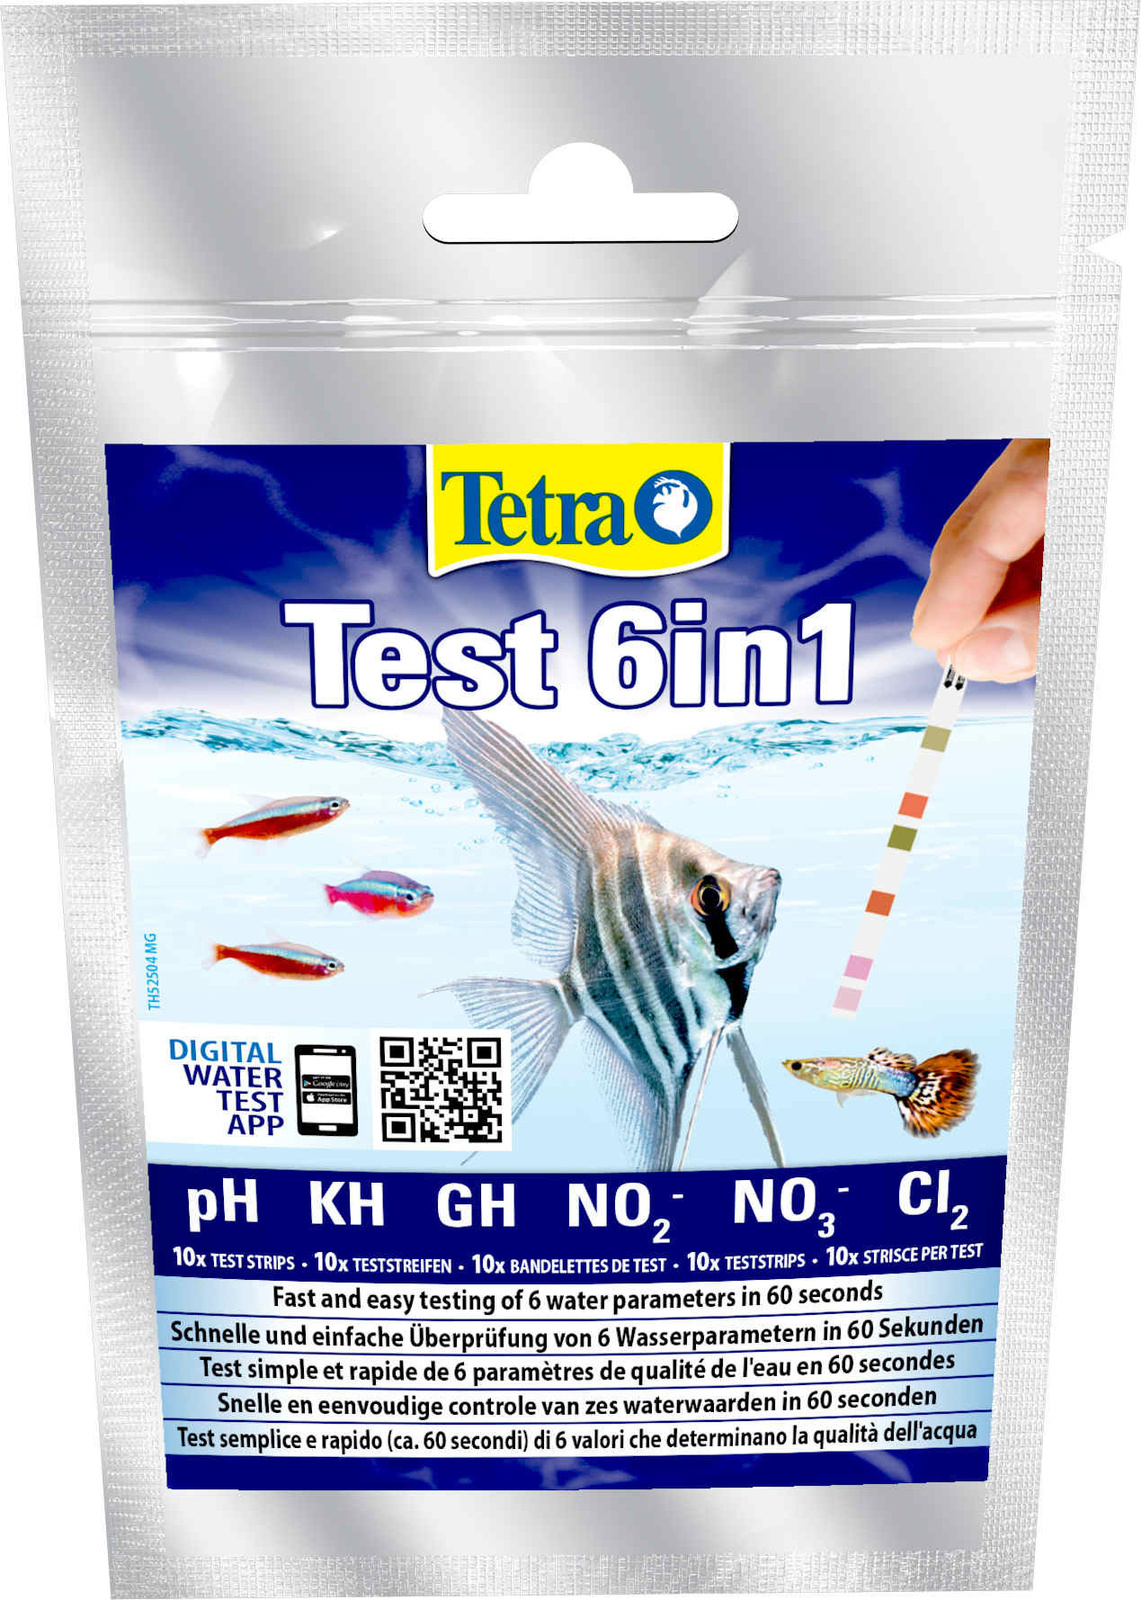 Тест для аквариума купить. Тест 6 в 1 GH/KH/no2/no3/PH/cl2, полоски для пресной воды 10шт. Набор тестов Tetra Test 6 в 1, 10 полосок. Tetra Test 6в1 GH/KH/no2/no3/PH/ci полоски для пресной воды 10шт. Tetra тест воды полоски.